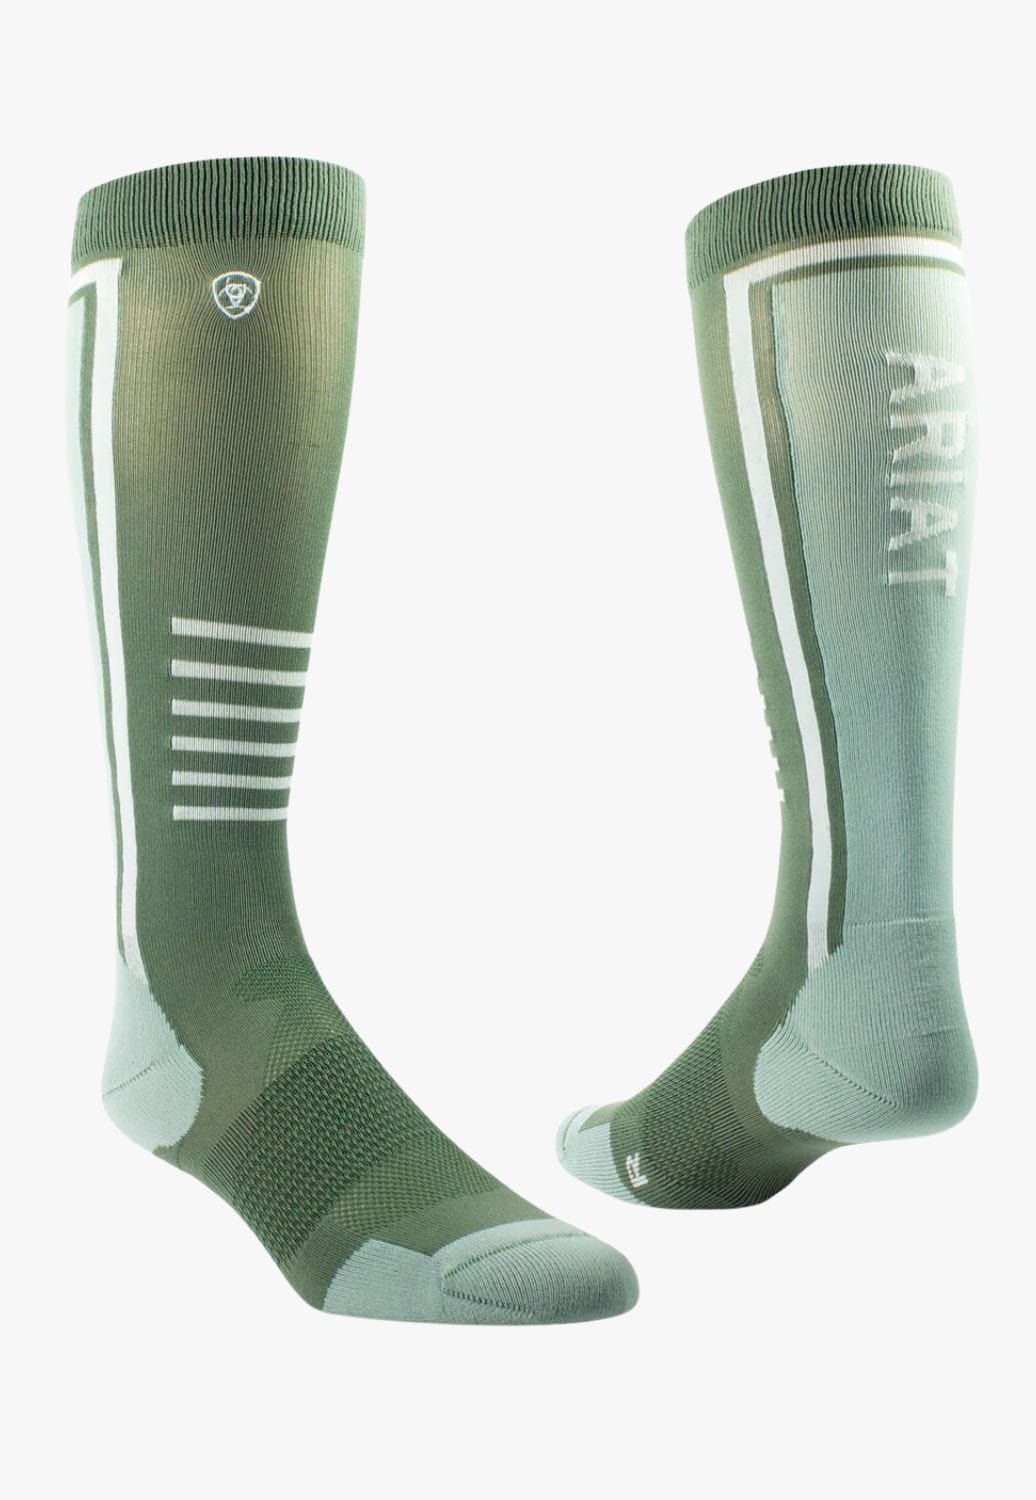 Ariat ACCESSORIES-Socks OSFA / Green Ariat TEK Slimline Performance Sock